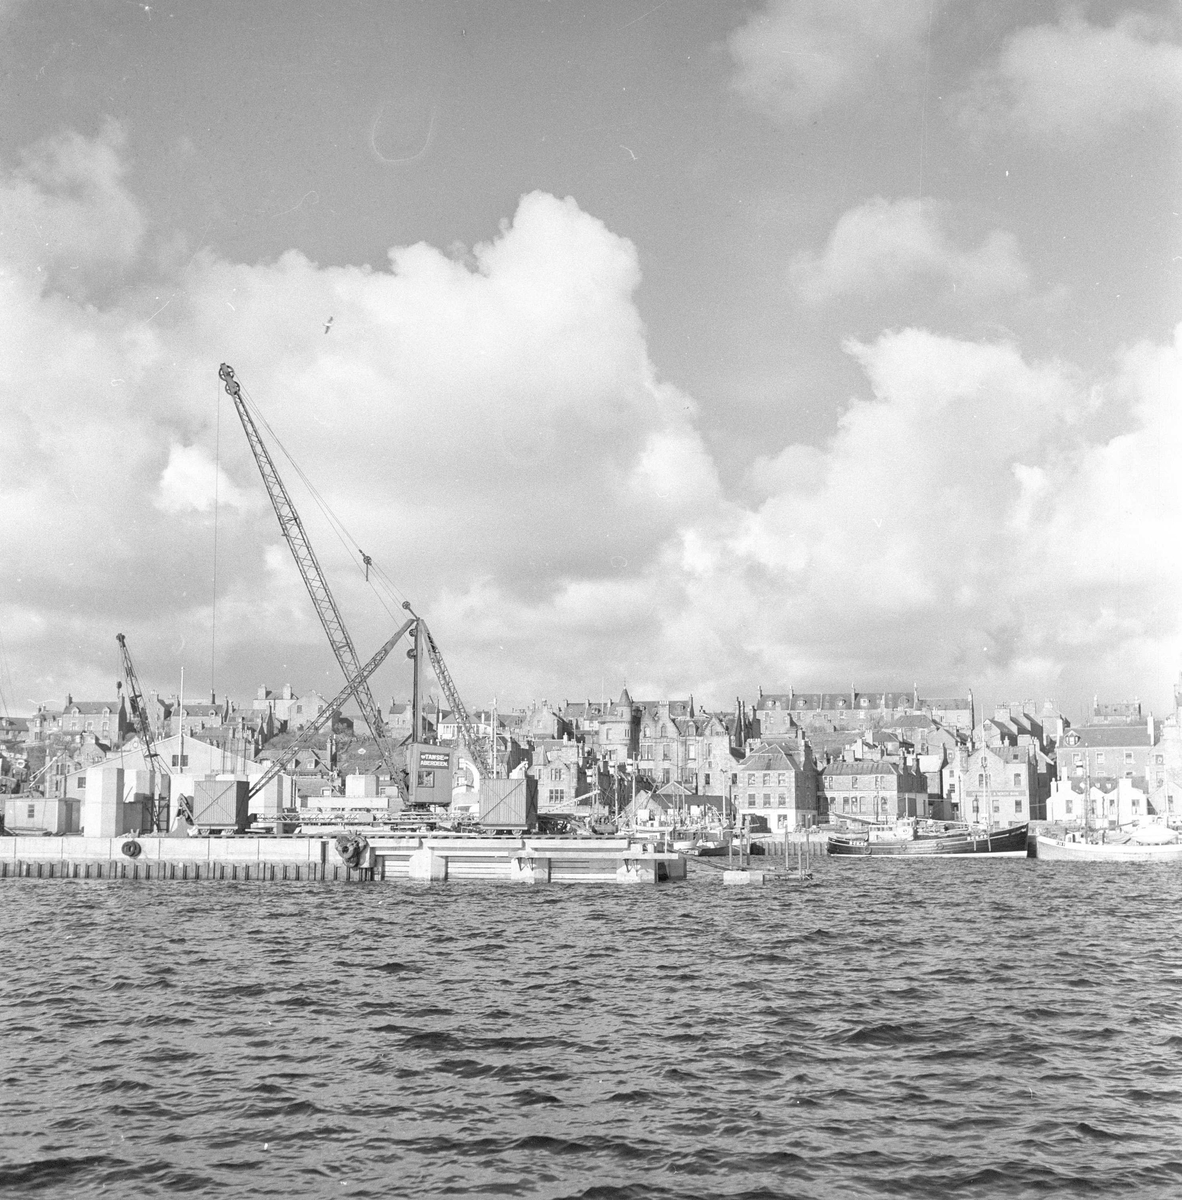 Pigghåfiske på Shetland.
Shetland, 14-22. mai 1958, oversikt over byens bebyggelse og kaia.